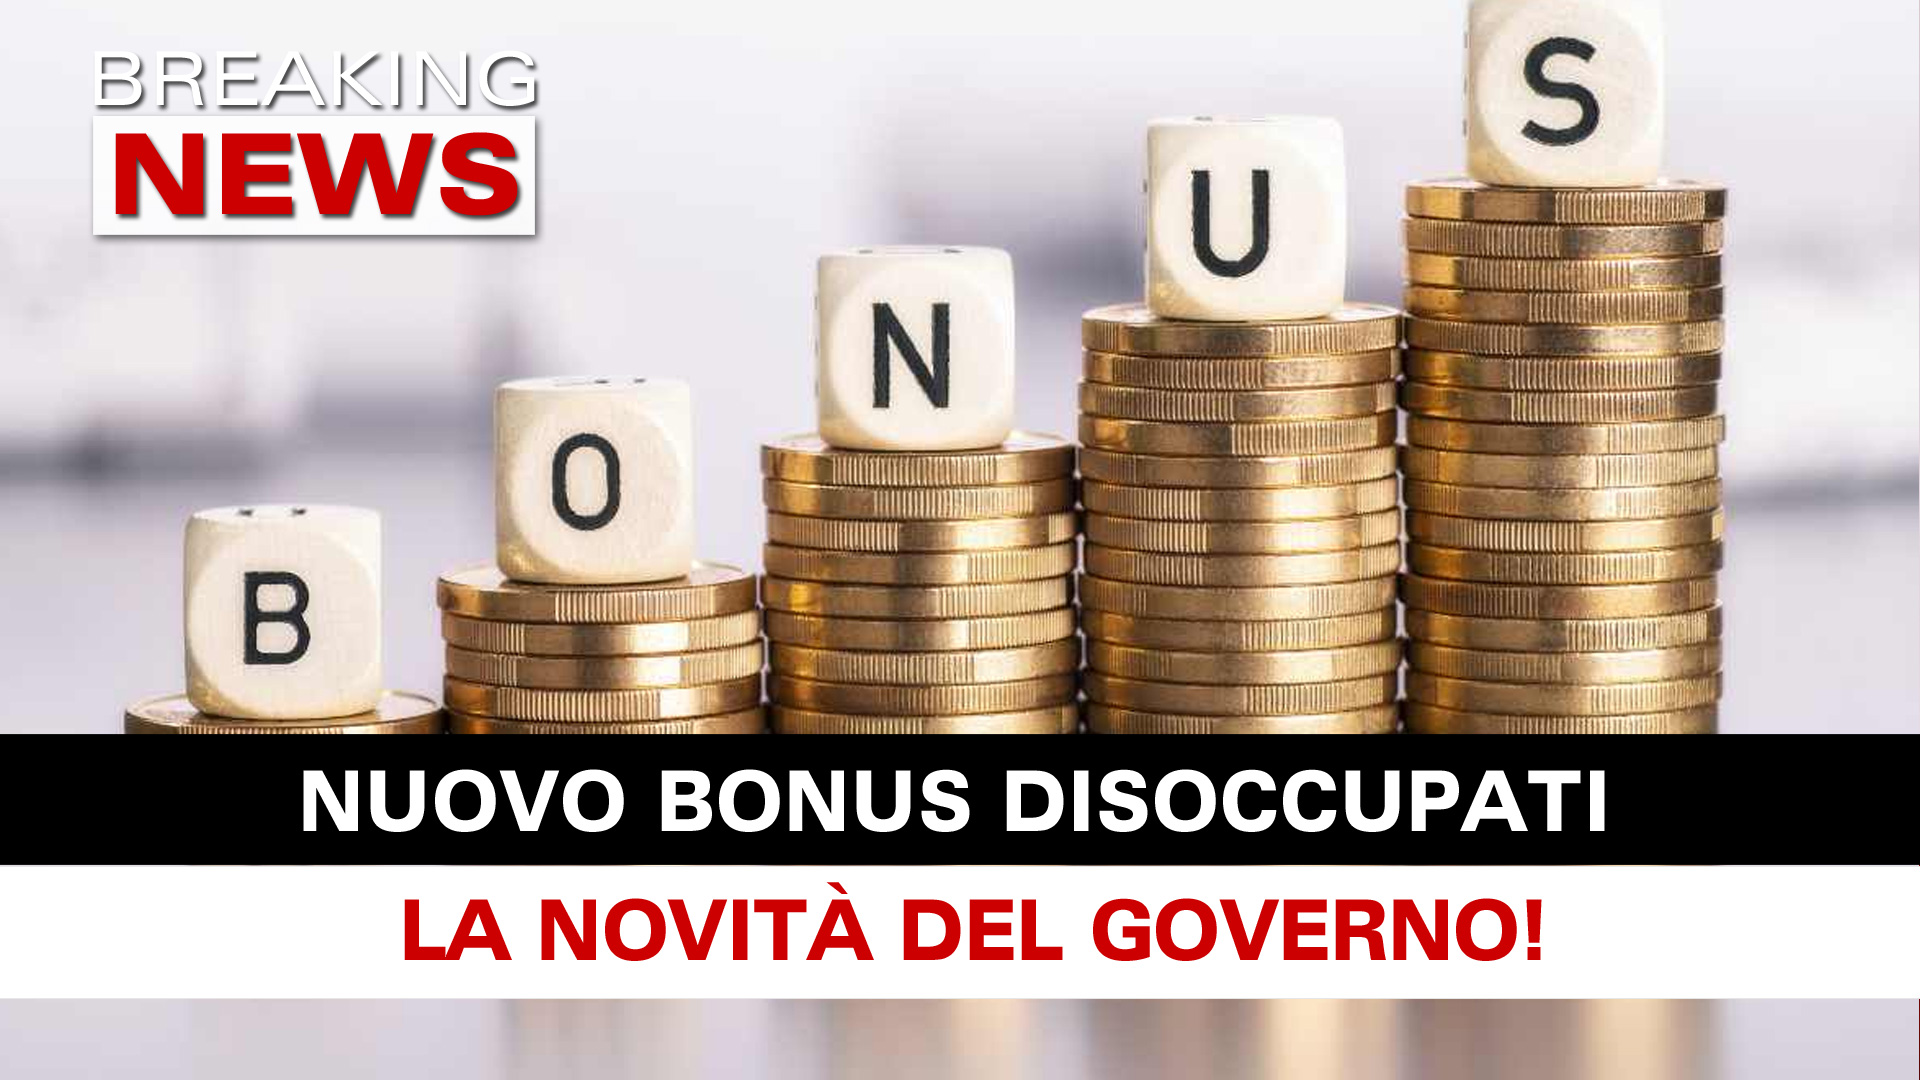 Nuovo Bonus Disoccupati La novità Del Governo! Breaking News Italia